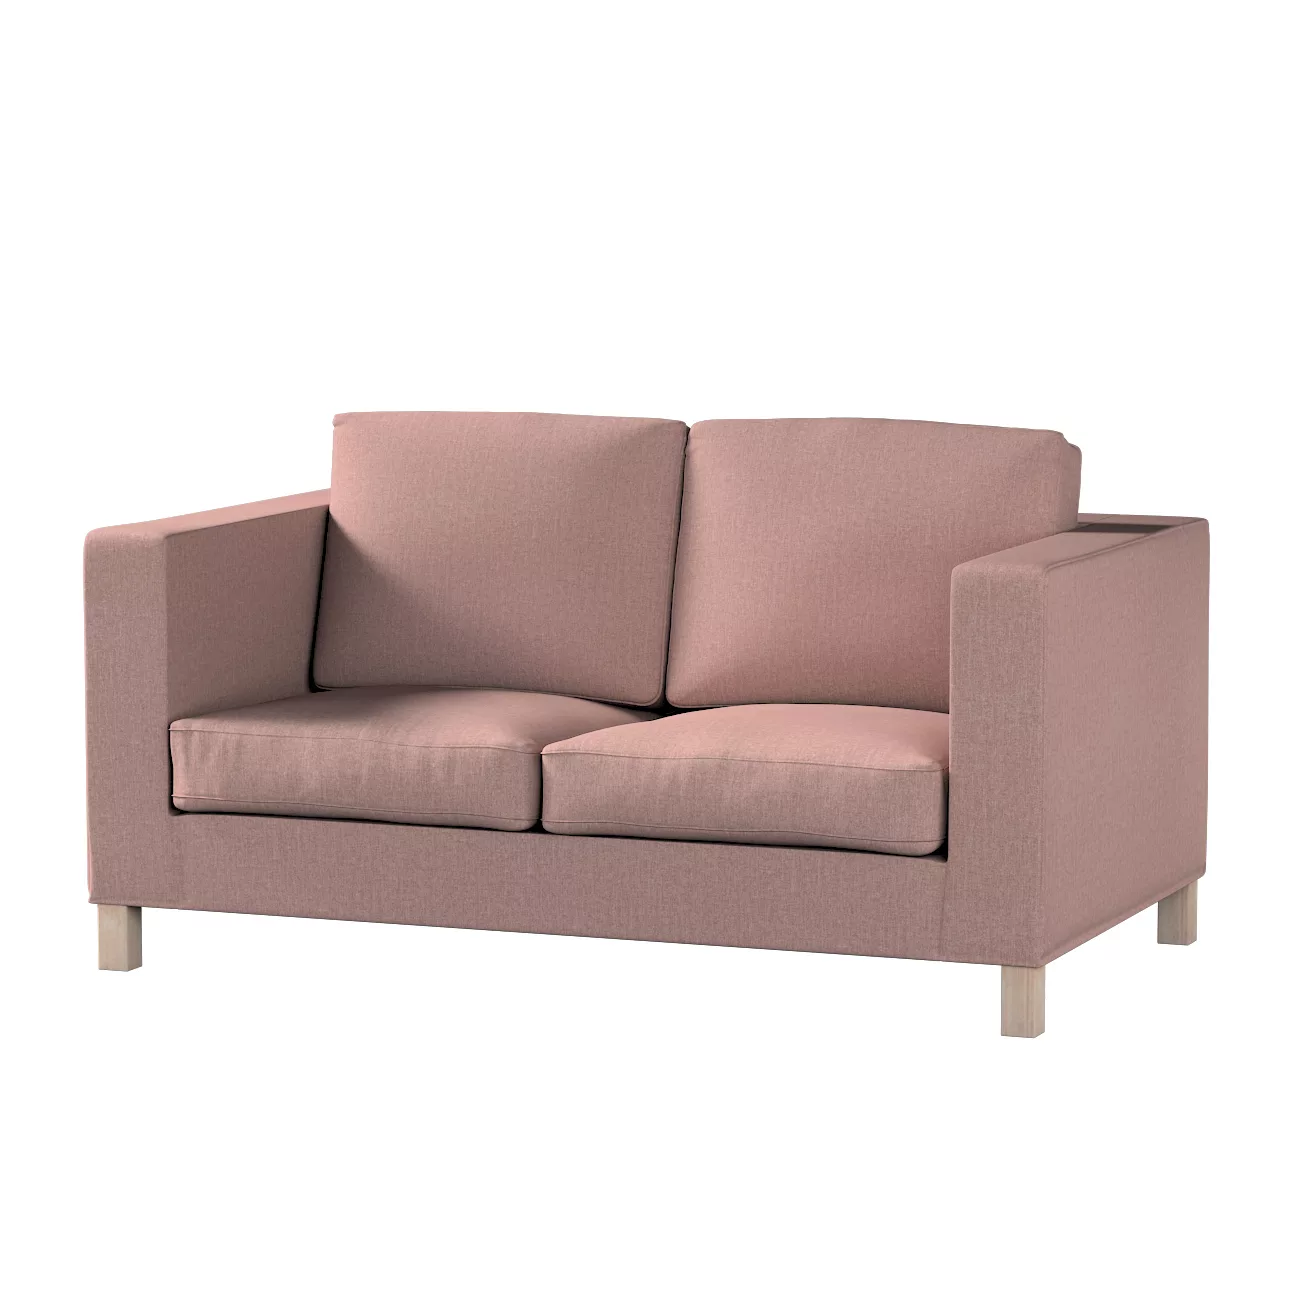 Bezug für Karlanda 2-Sitzer Sofa nicht ausklappbar, kurz, altrosa, 60cm x 3 günstig online kaufen